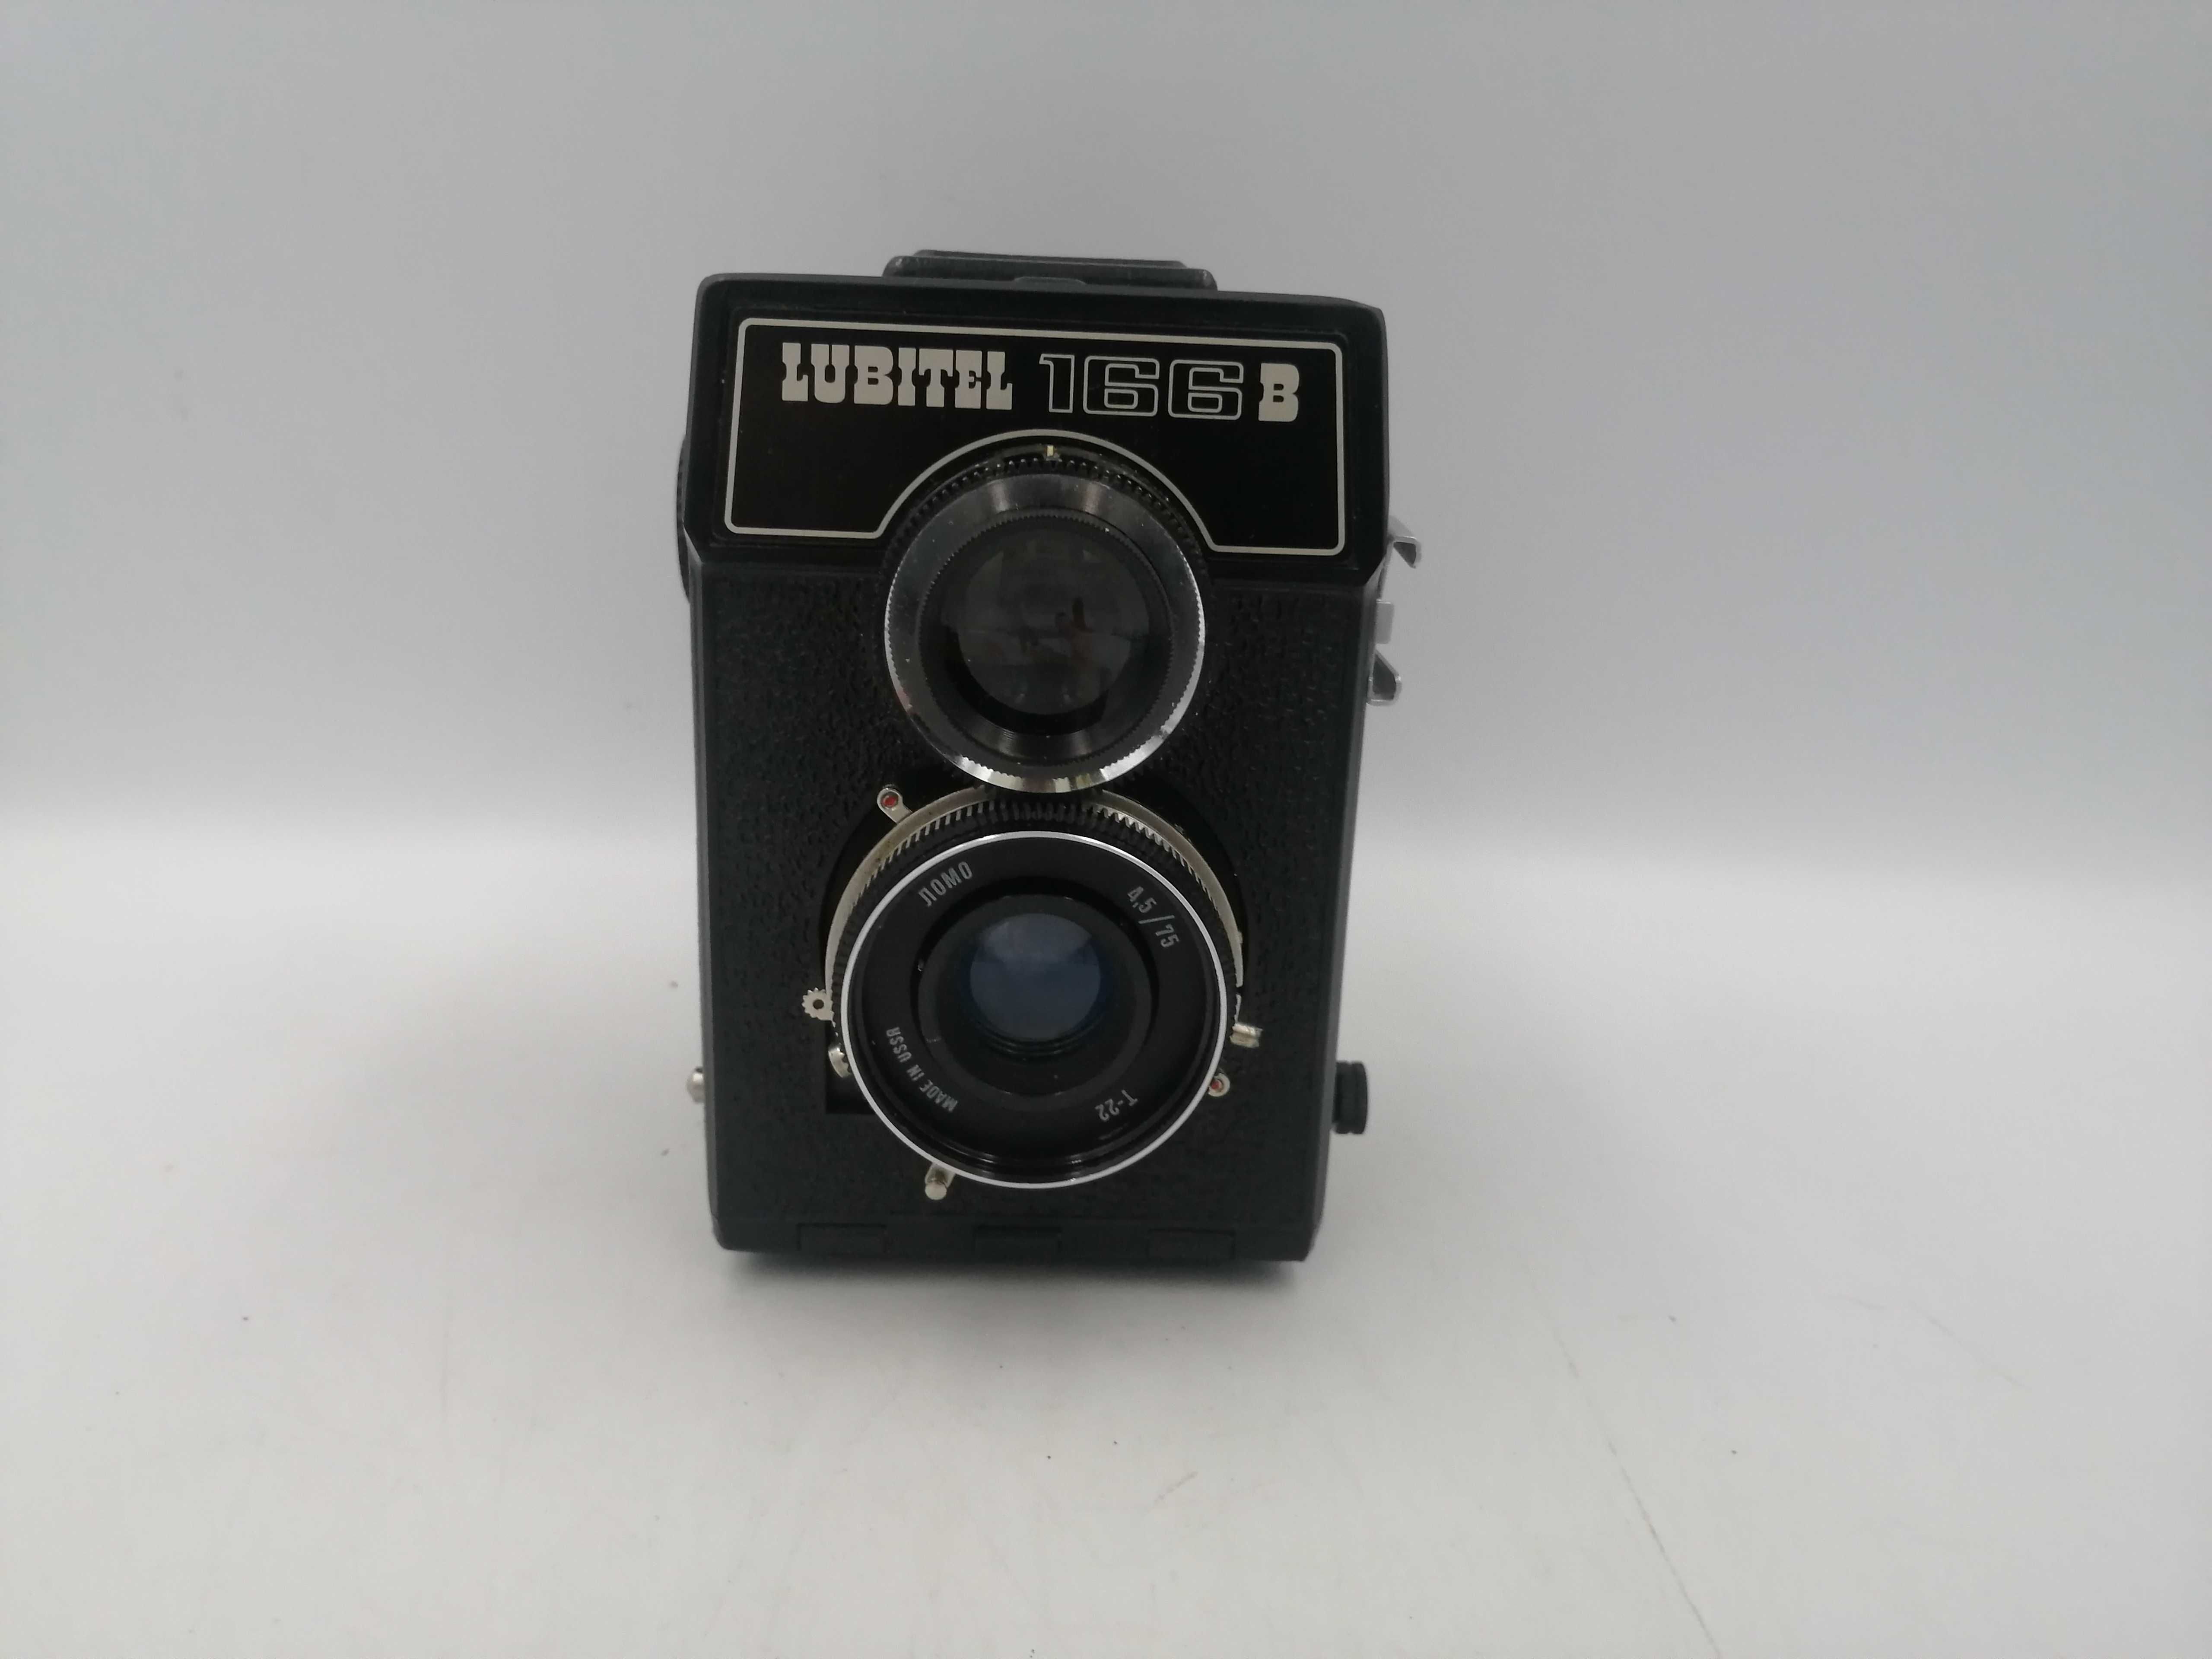 Aparat fotograficzny analogowy Lubitel 166B sprawny